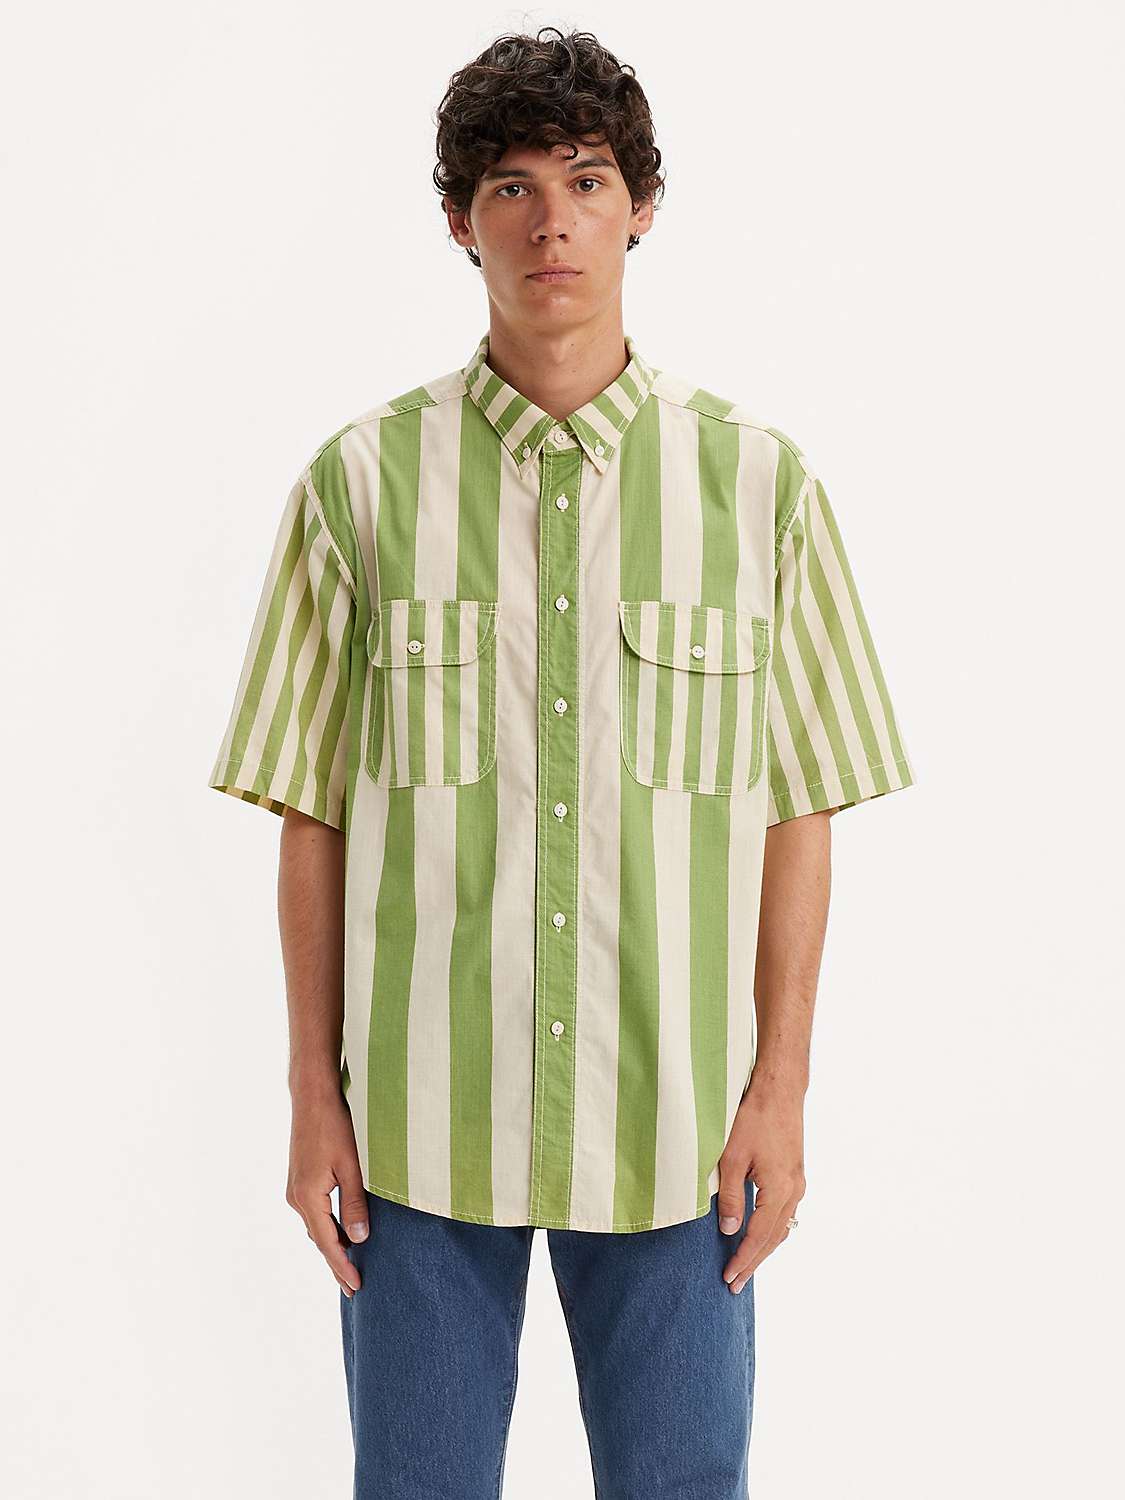 Buy Levi's Skate Short Sleeve Woven Shirt, Green/White Online at johnlewis.com